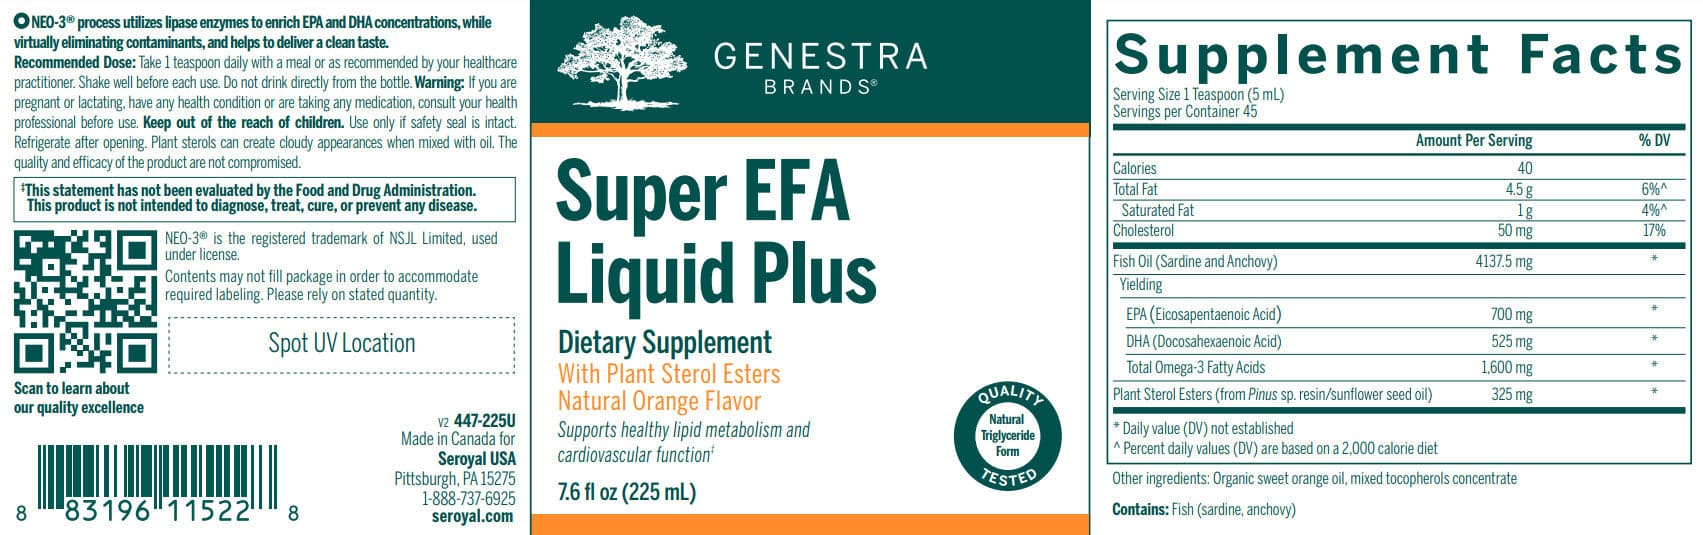 Genestra Brands Super EFA Liquid Plus Label